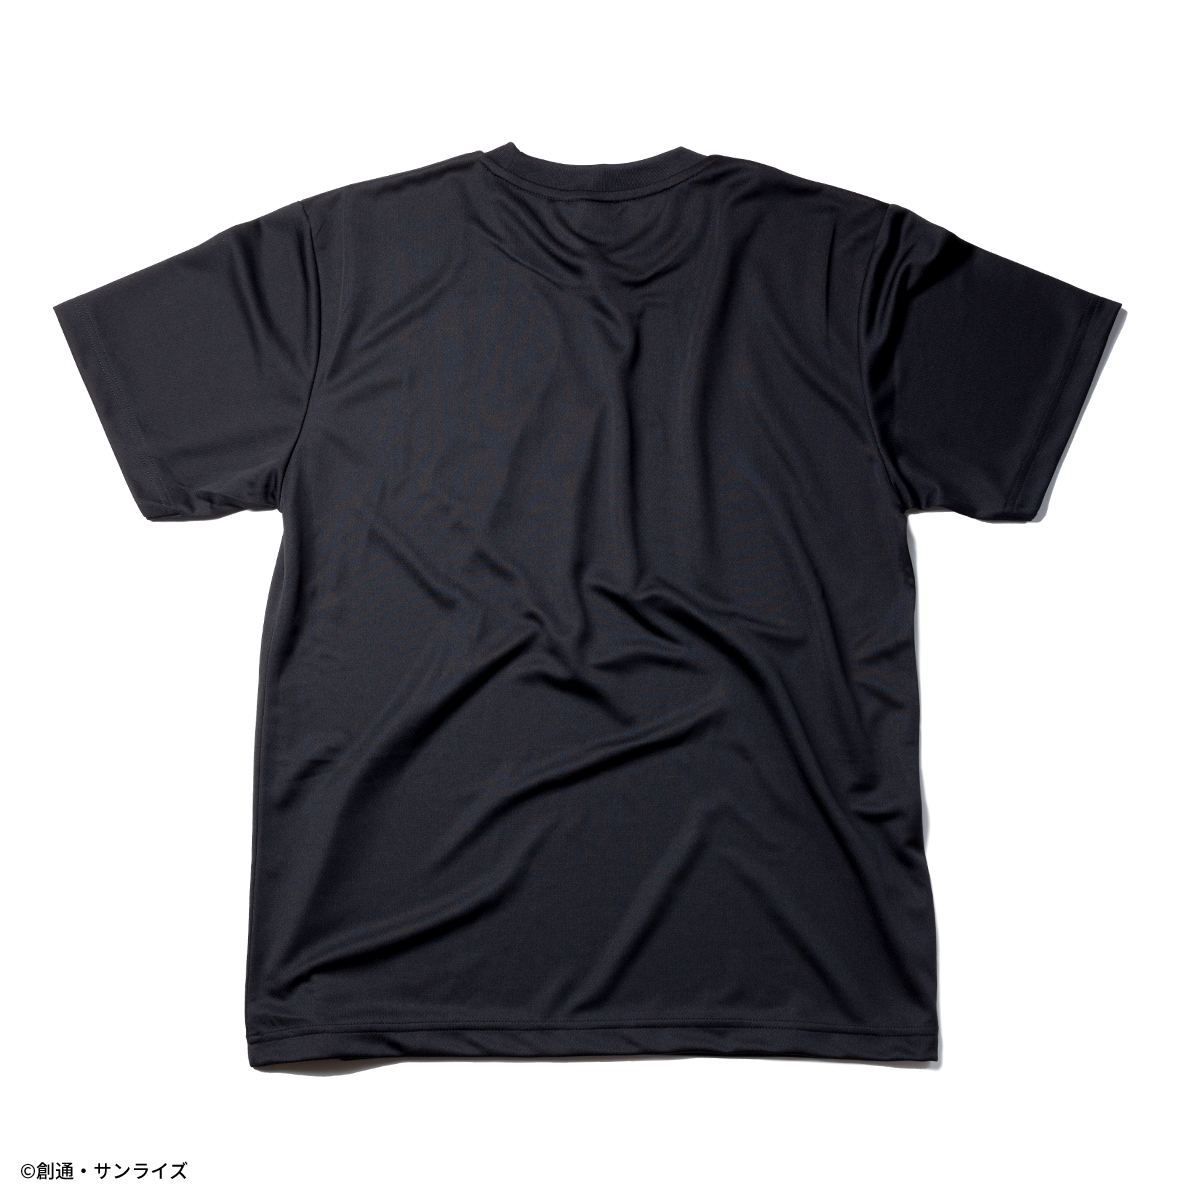 『機動戦士ガンダムSEED』より吸水速乾素材を使用したTシャツとショートパンツの新柄が登場!